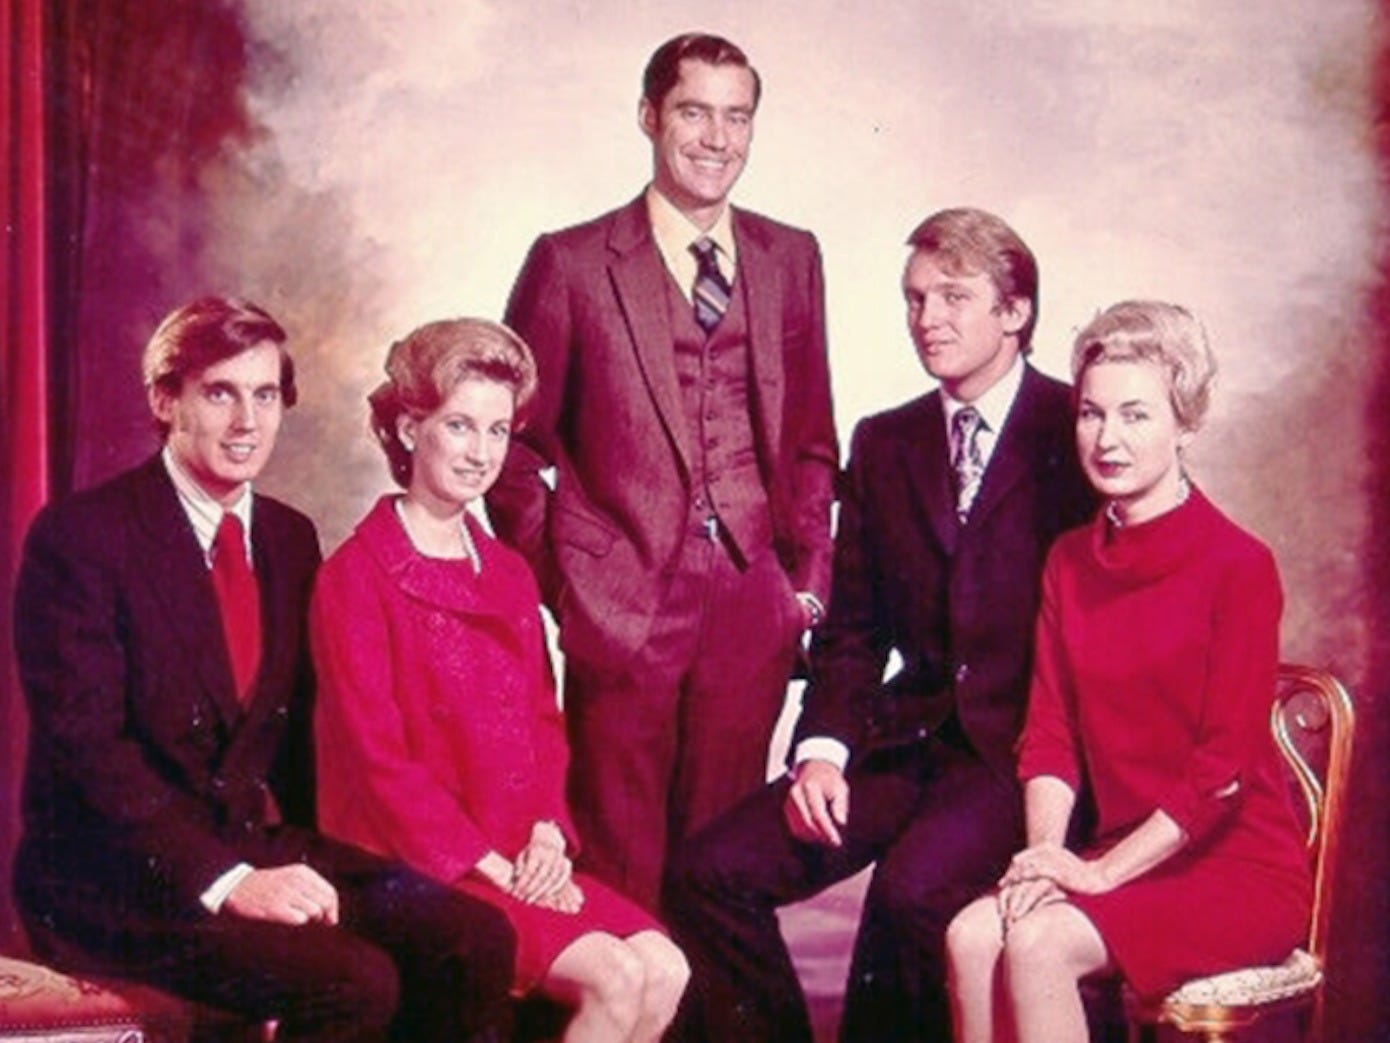 Foto: De broers en zussen van Donald Trump (tweede van rechts) met naast hem Maryanne. Bron: Trump Campaign